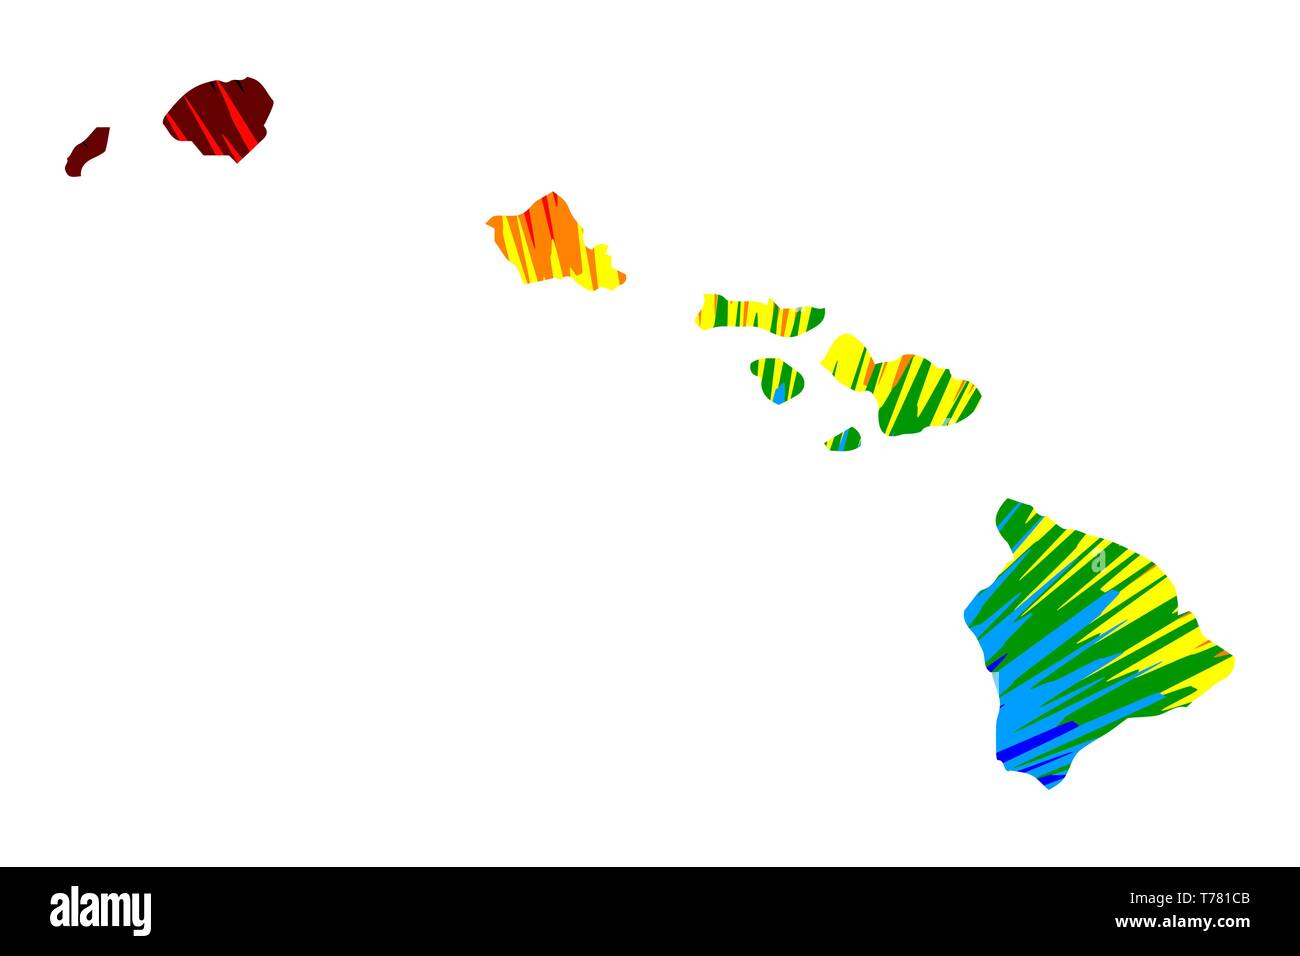 Hawaii (États-Unis d'Amérique, USA, États-Unis, US) - La carte est conçu rainbow résumé motif coloré, de l'état d'Hawaï de mmap, explosion de couleurs Illustration de Vecteur